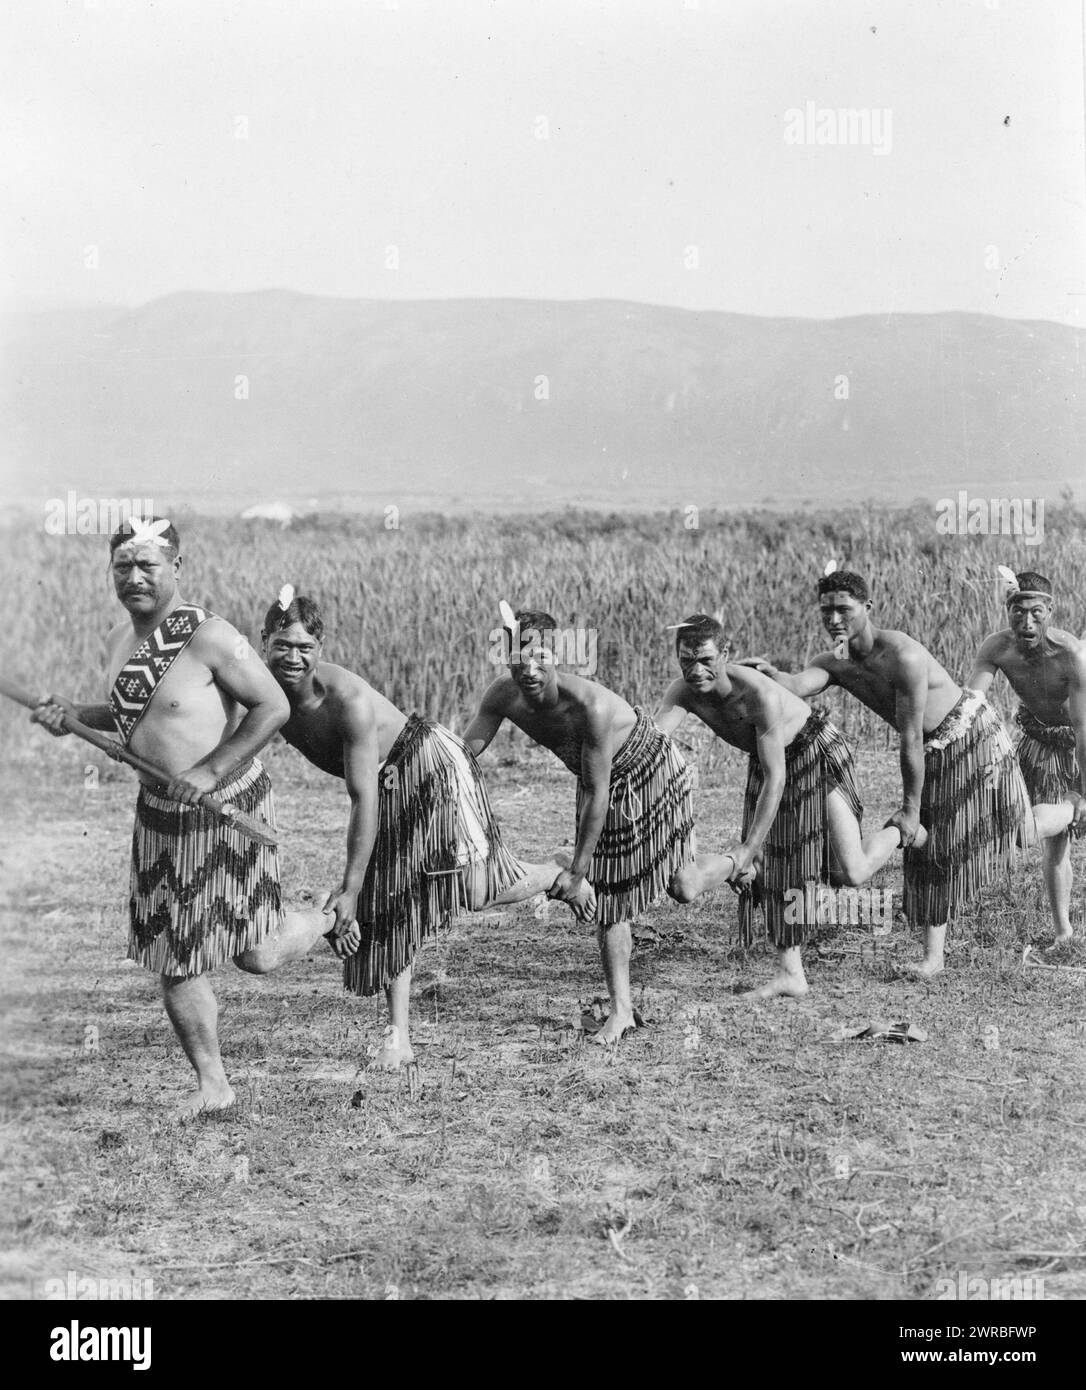 Fünf Maori-Männer, die in traditioneller Kleidung Haka tanzen (Kriegstanz), zwischen 1890 und 1920, Maori (Neuseeland), Tanz, 1890-1920, Fotodrucke, 1890-1920. Fotodrucke, 1890-1920, 1 Fotodruck Stockfoto